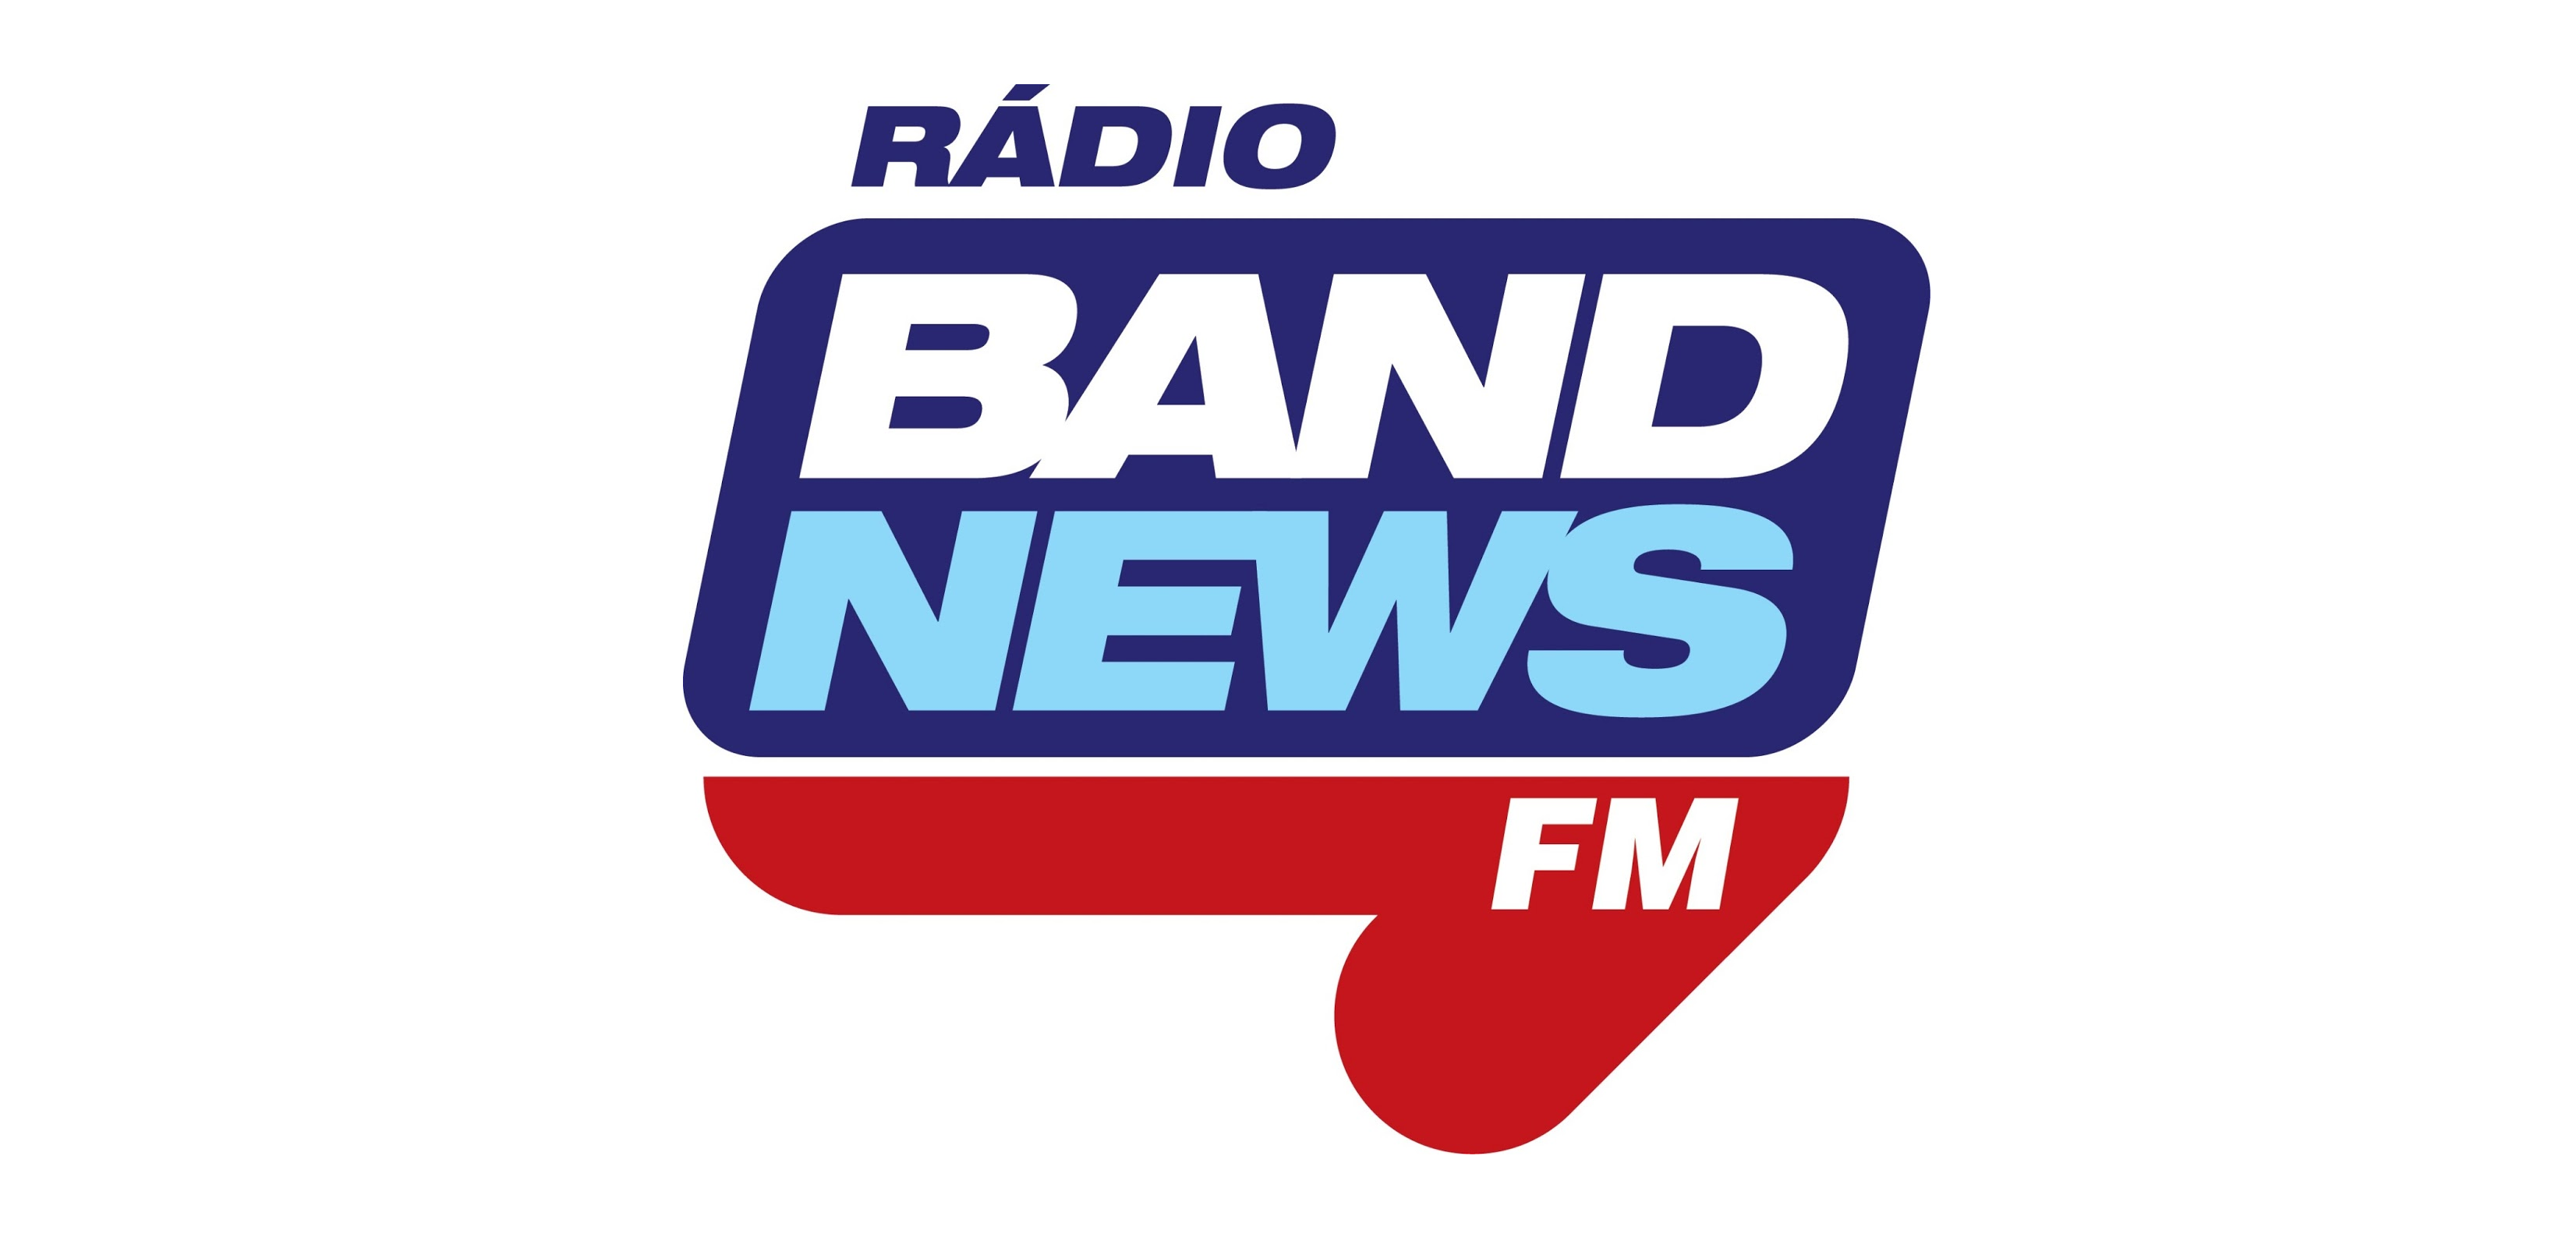 BandNews FM promove campanha nacional de doação de sangue